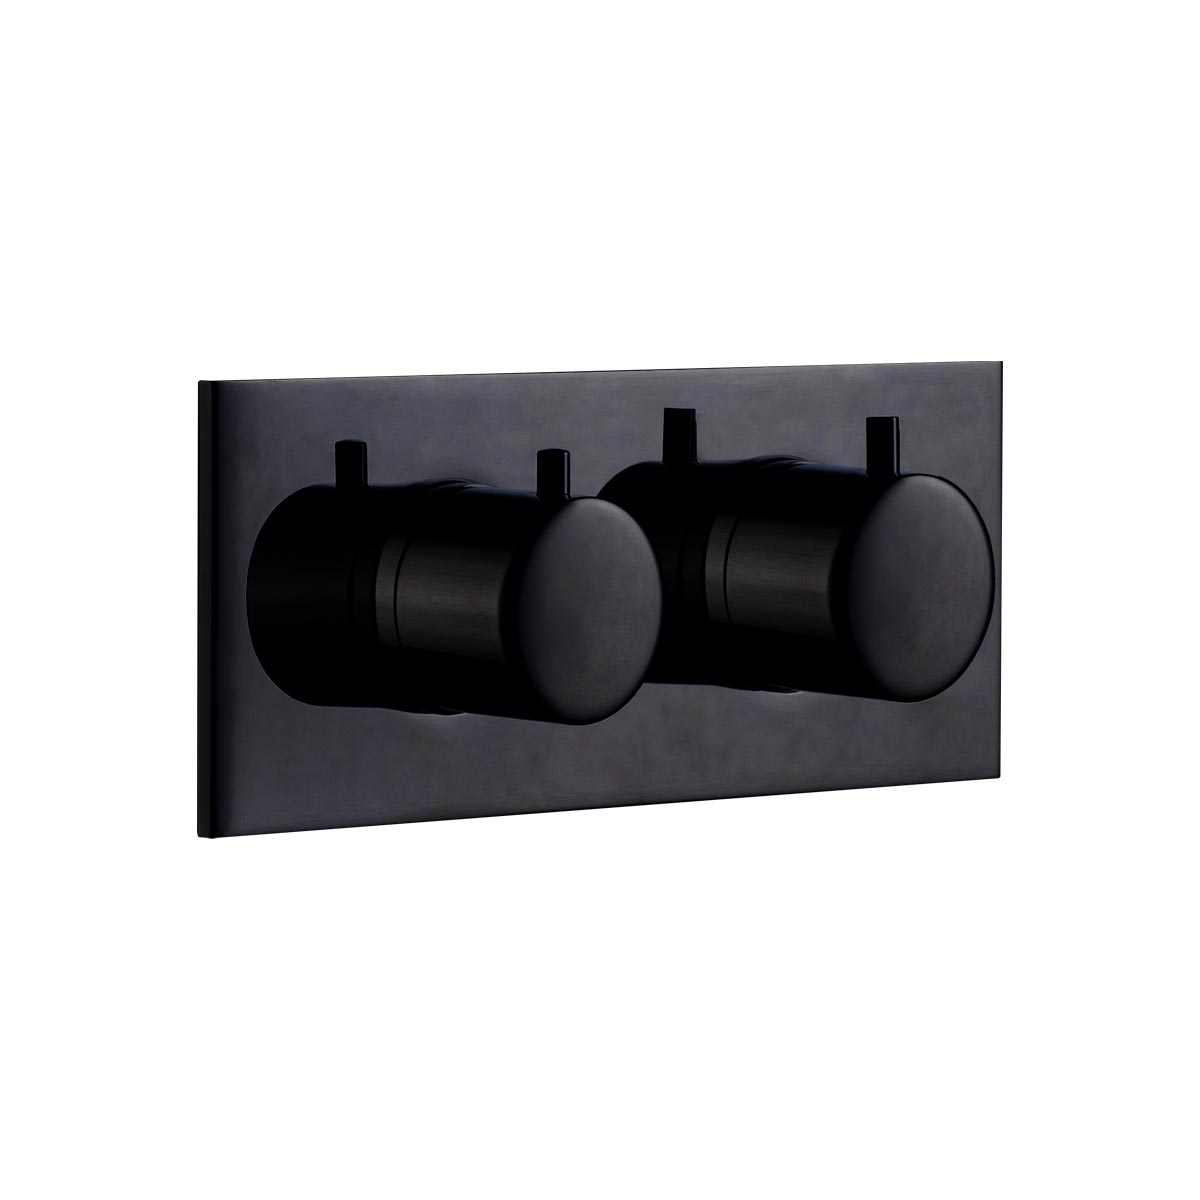 Rubinetto Tondo termostatico orizzontale - Nero opaco - Cropelli Shower, sistemi doccia di design per il tuo bagno